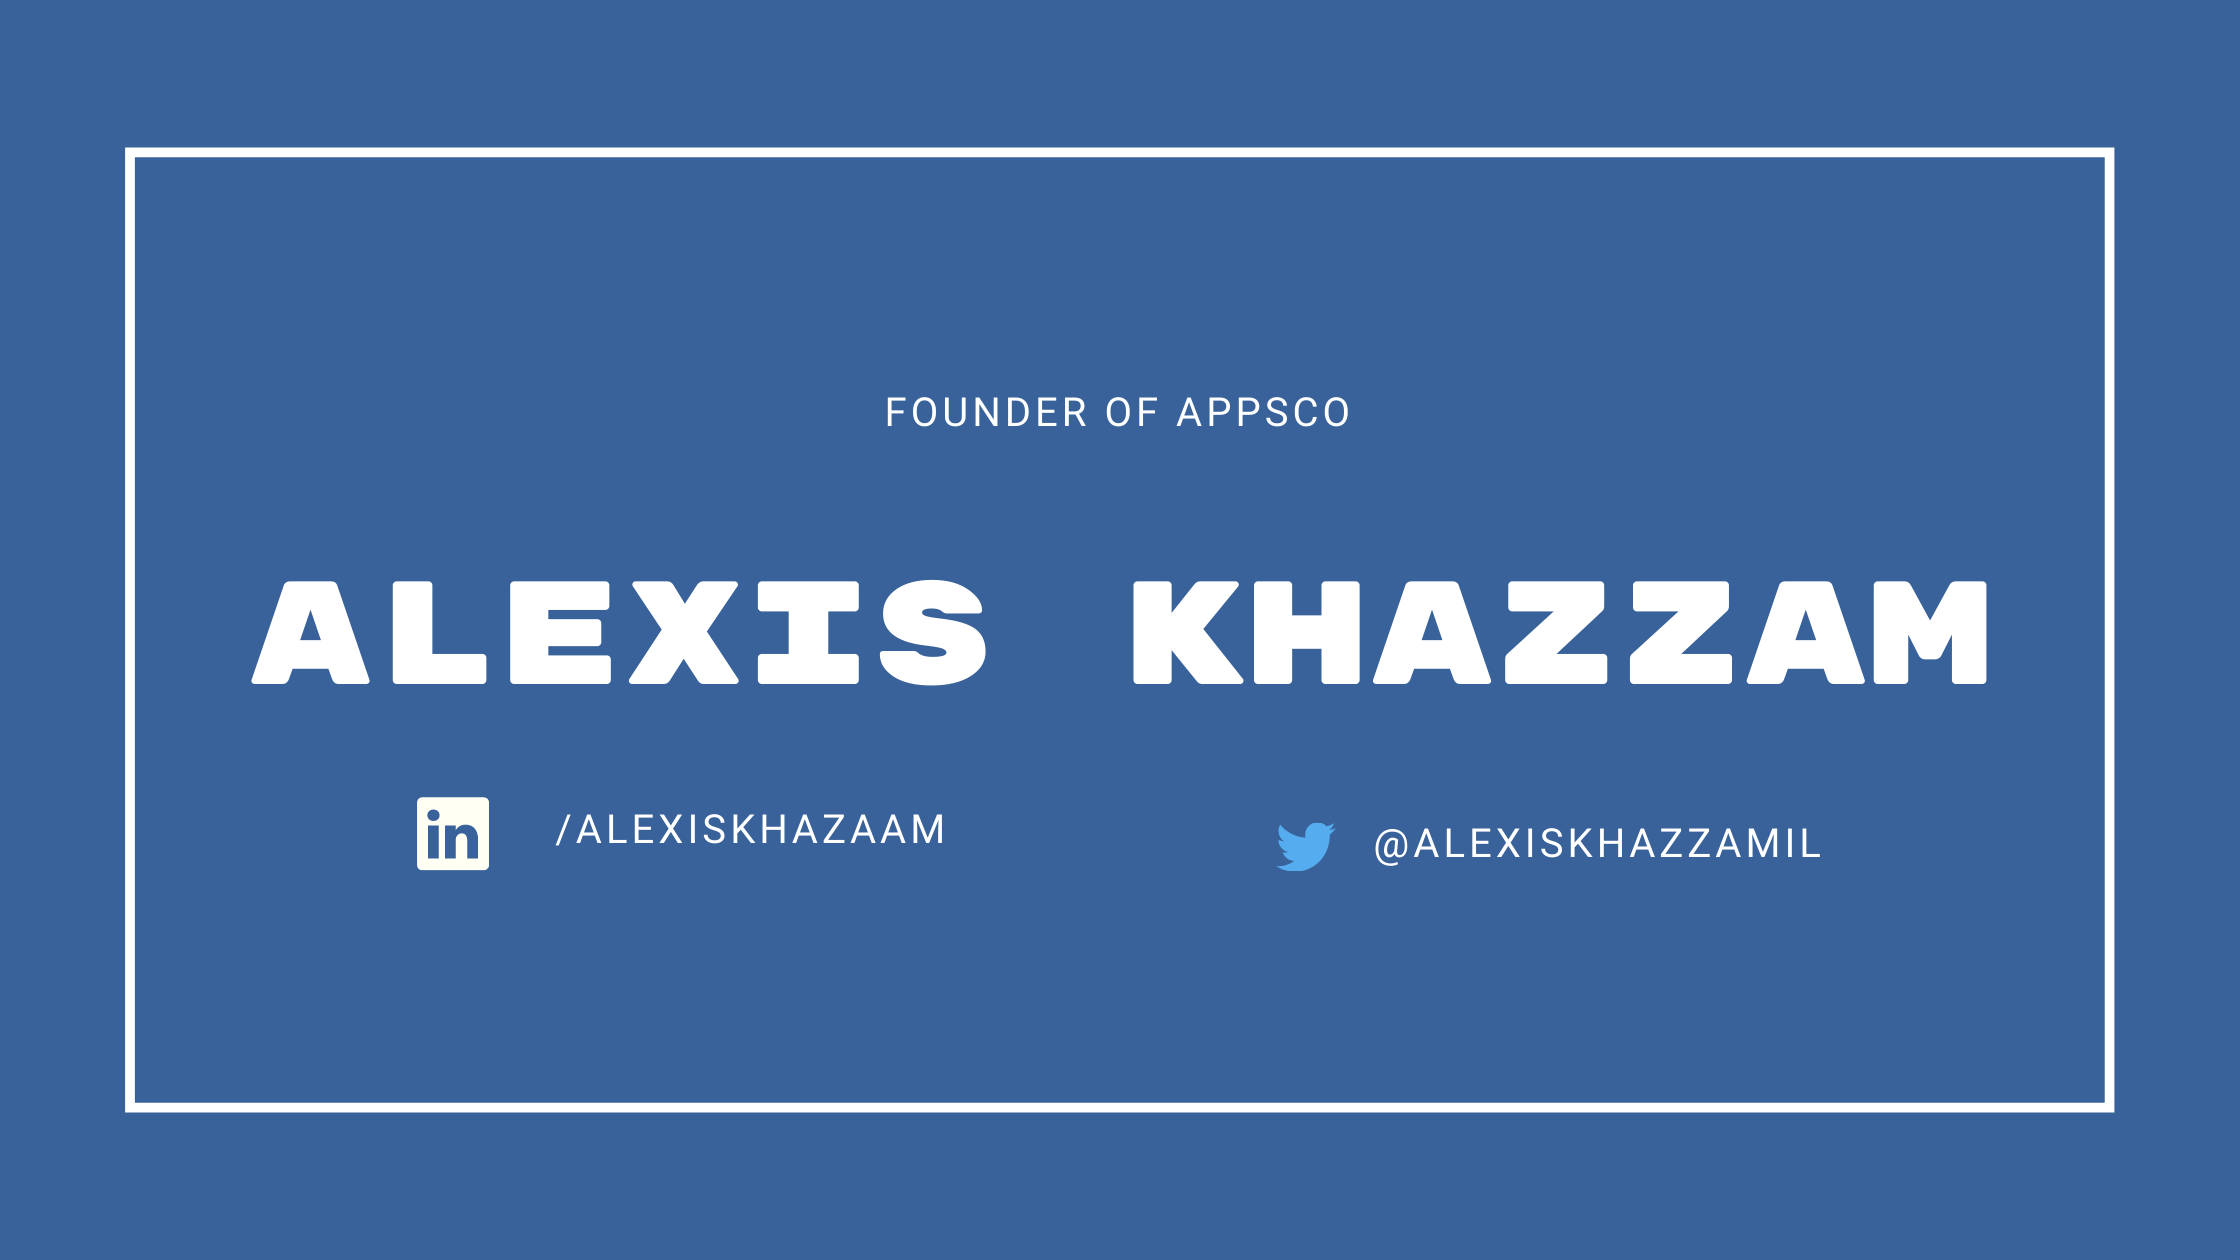 Alexis Khazzam (1)